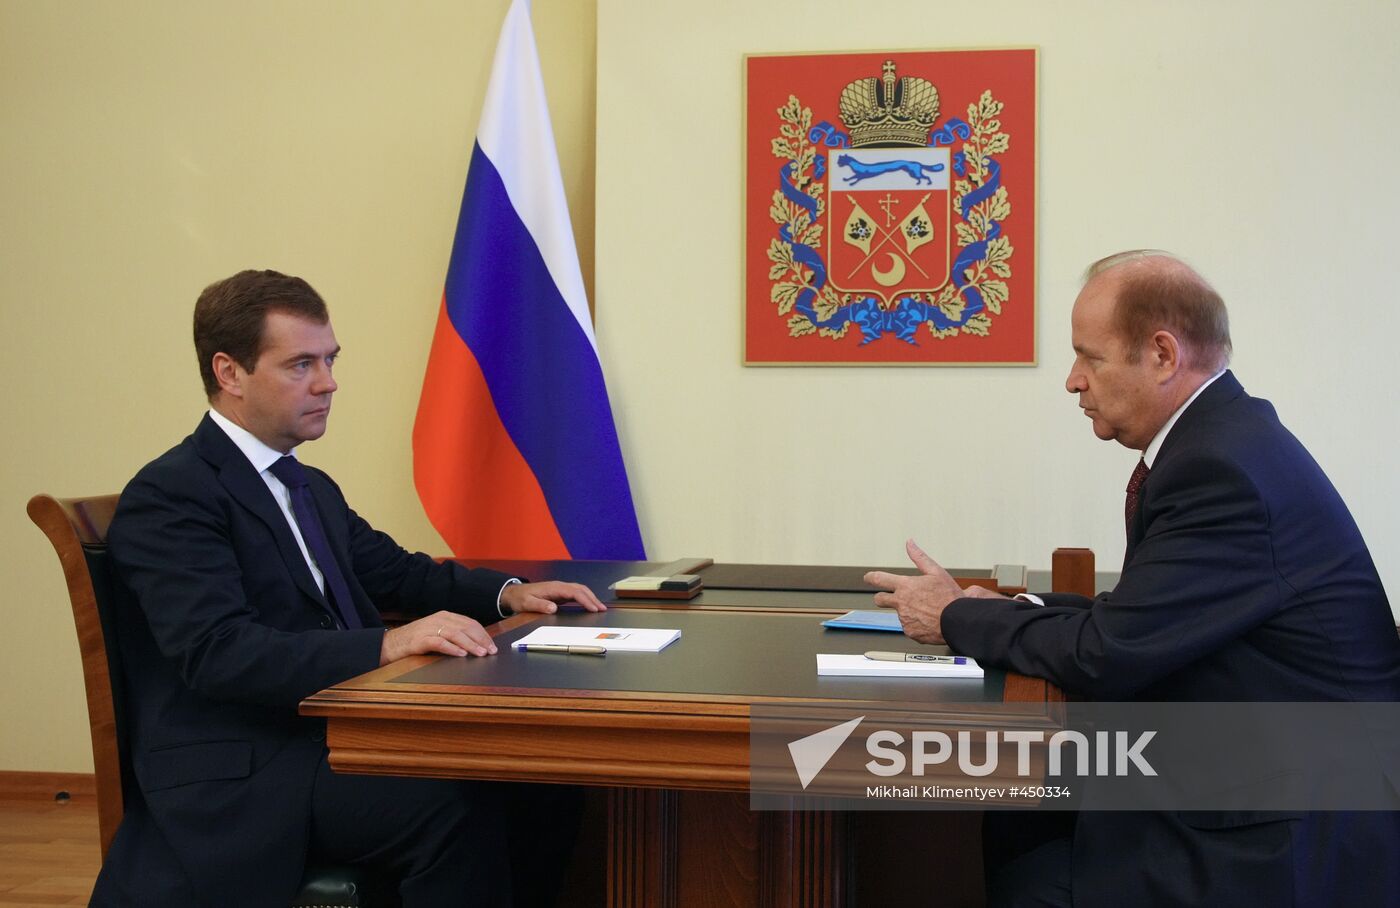 Dmitry Medvedev meets Alexei Chernyshev